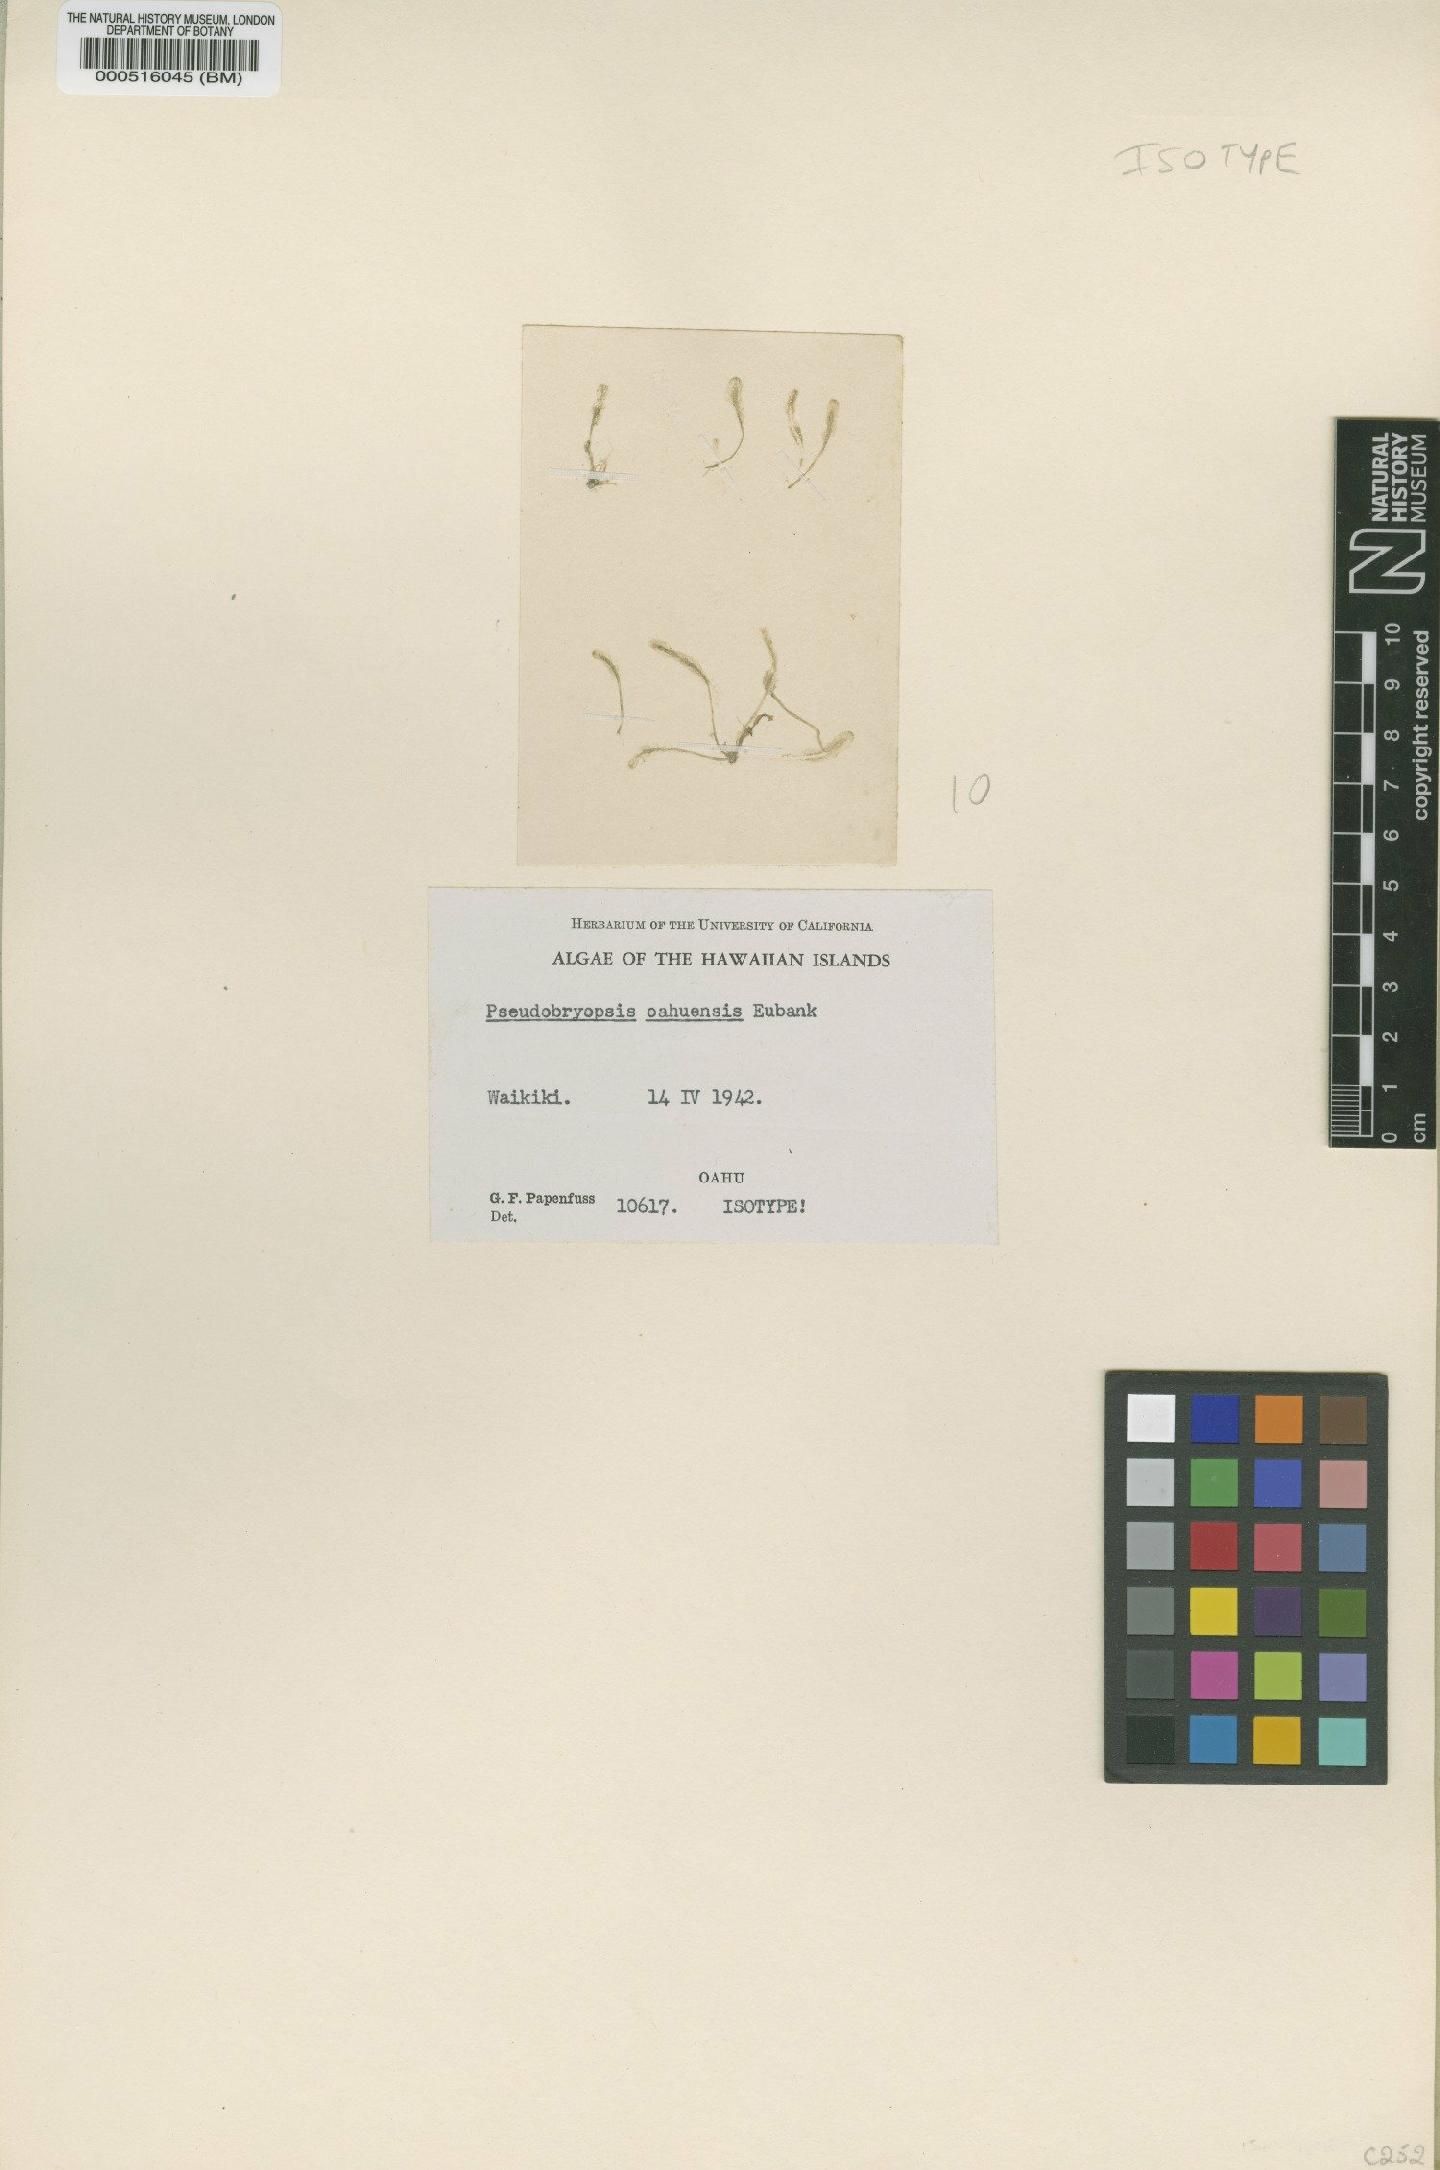 To NHMUK collection (Pseudobryopsis oahuensis Eubank; Isotype; NHMUK:ecatalogue:4830661)